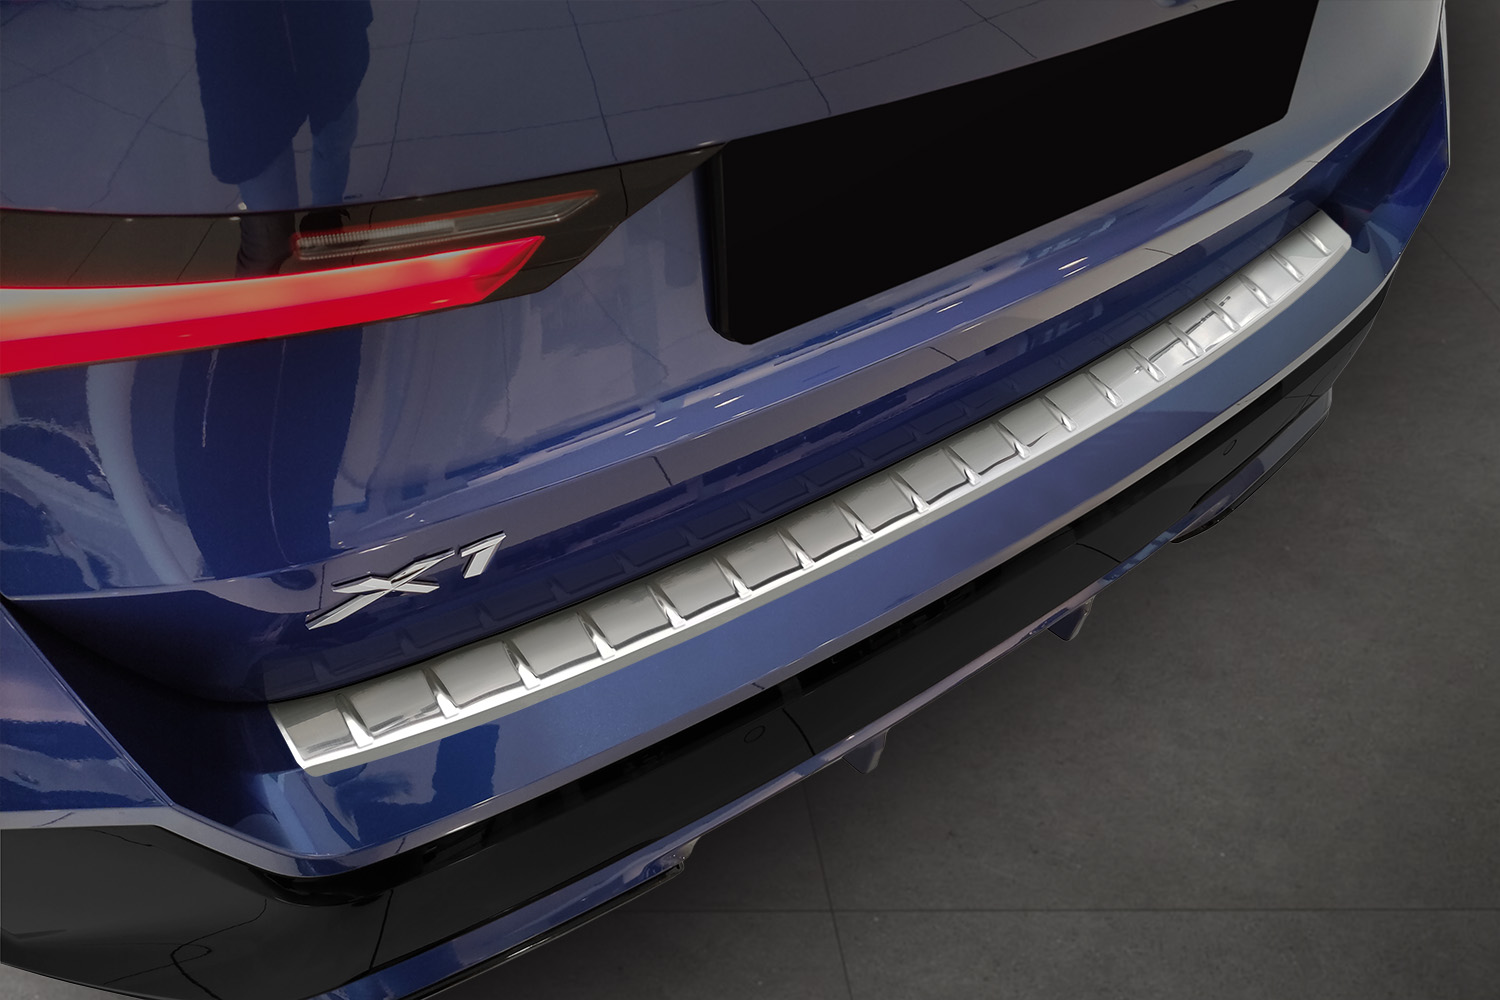 Ladekantenschutz für BMW X1 - Schutz für die Ladekante Ihres Fahrzeuges